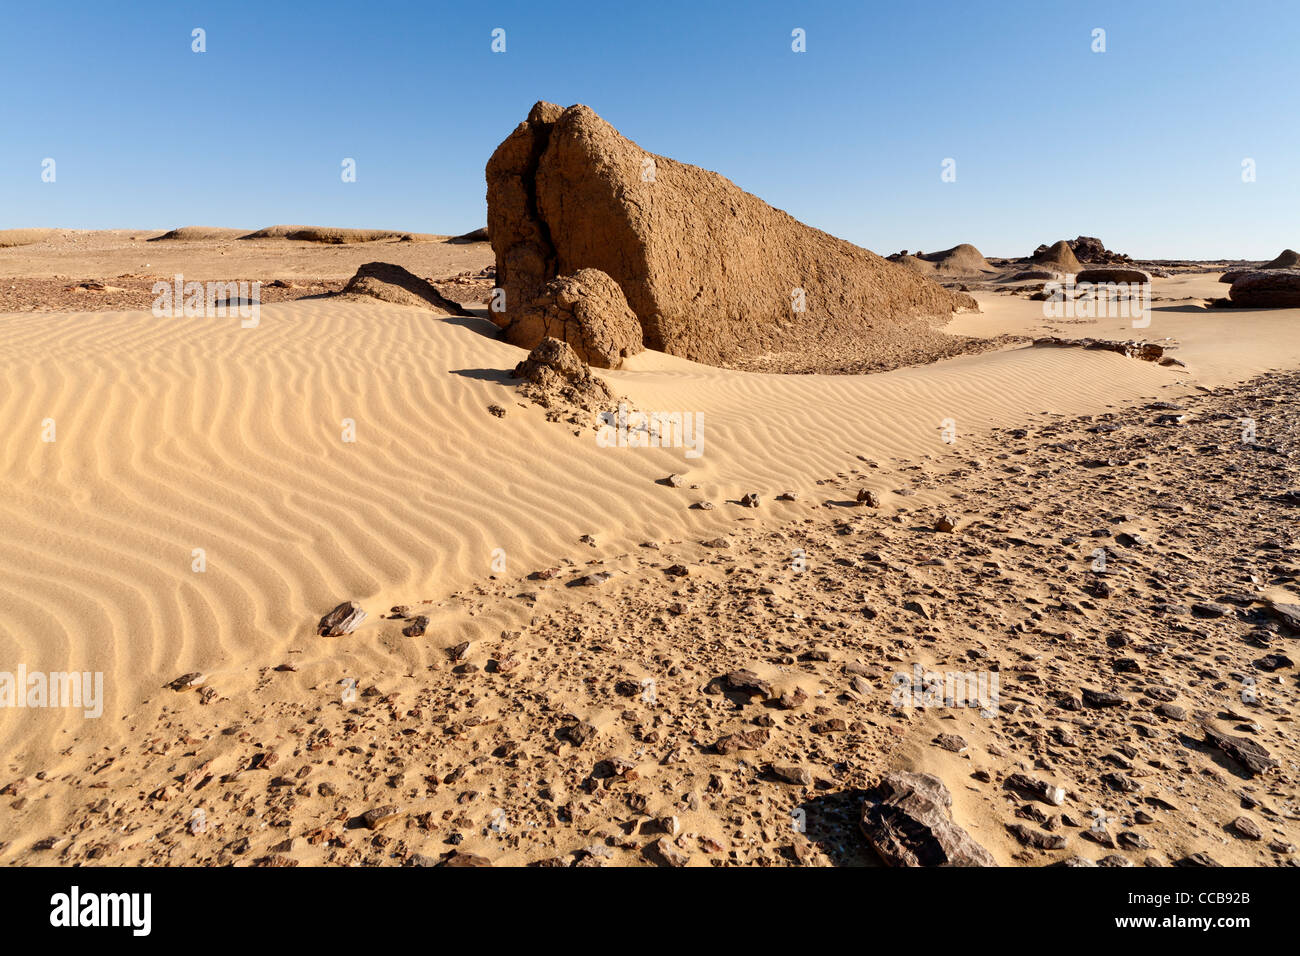 Lion dans le champ de boue yardang Dakhla Oasis Afrique Egypte Banque D'Images